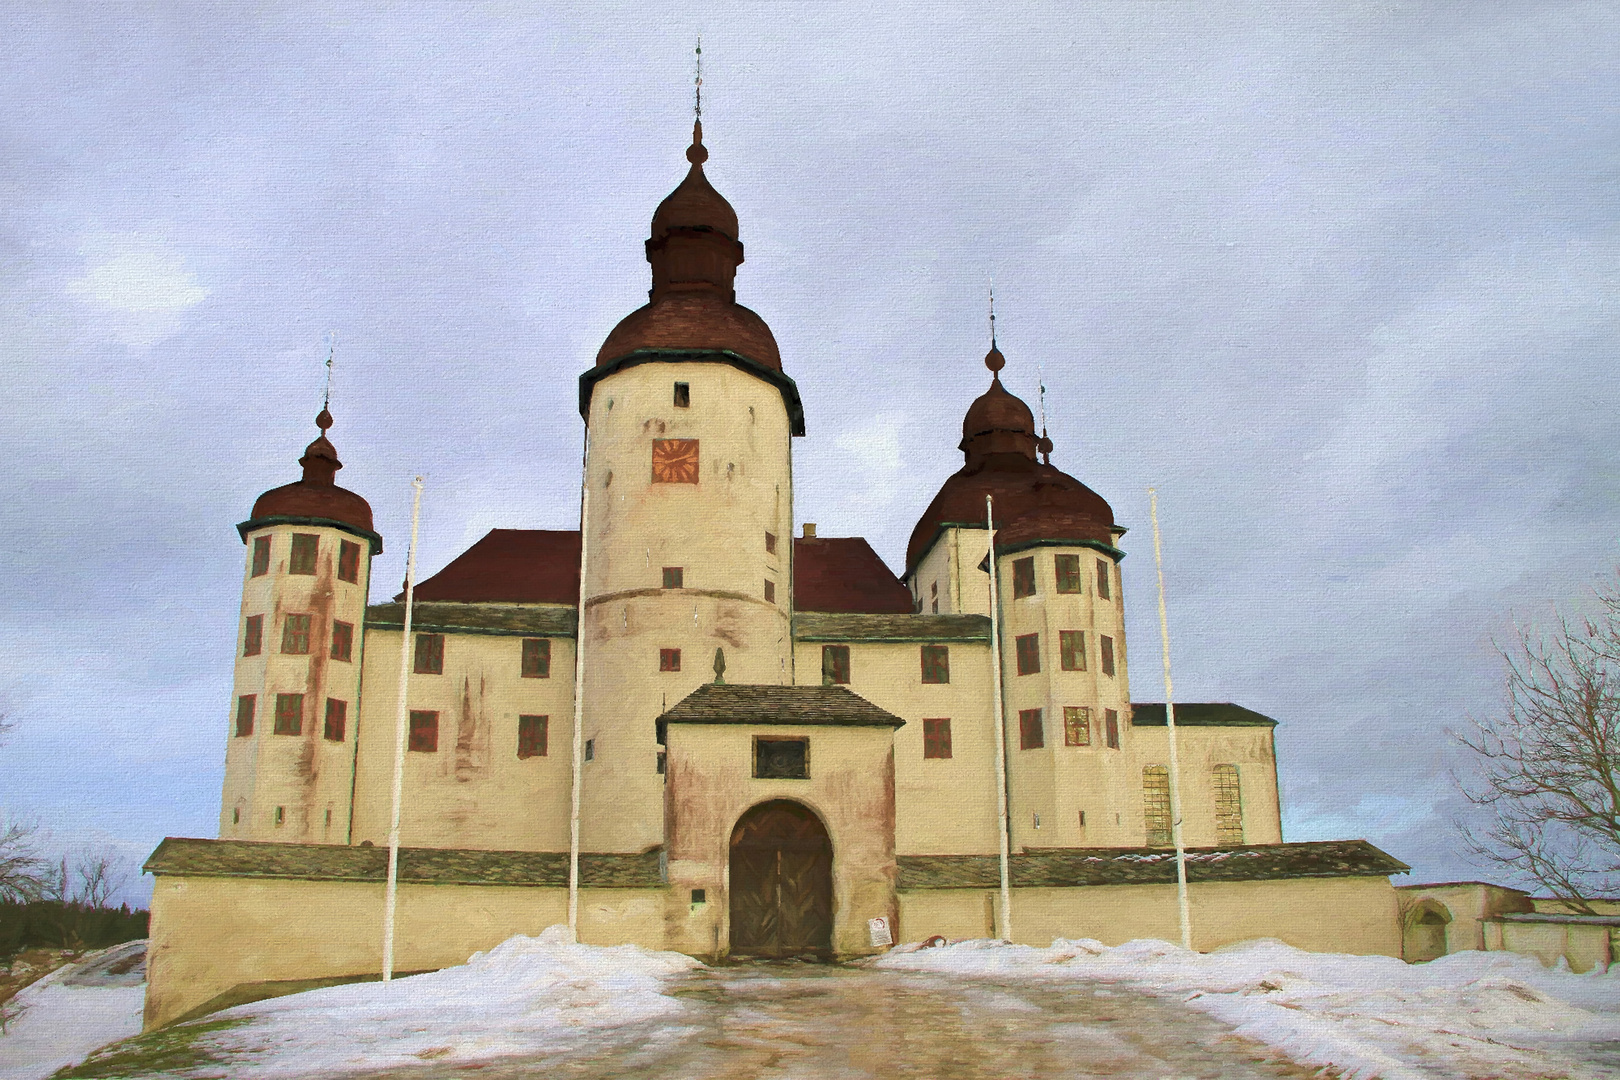 Castle Läckö